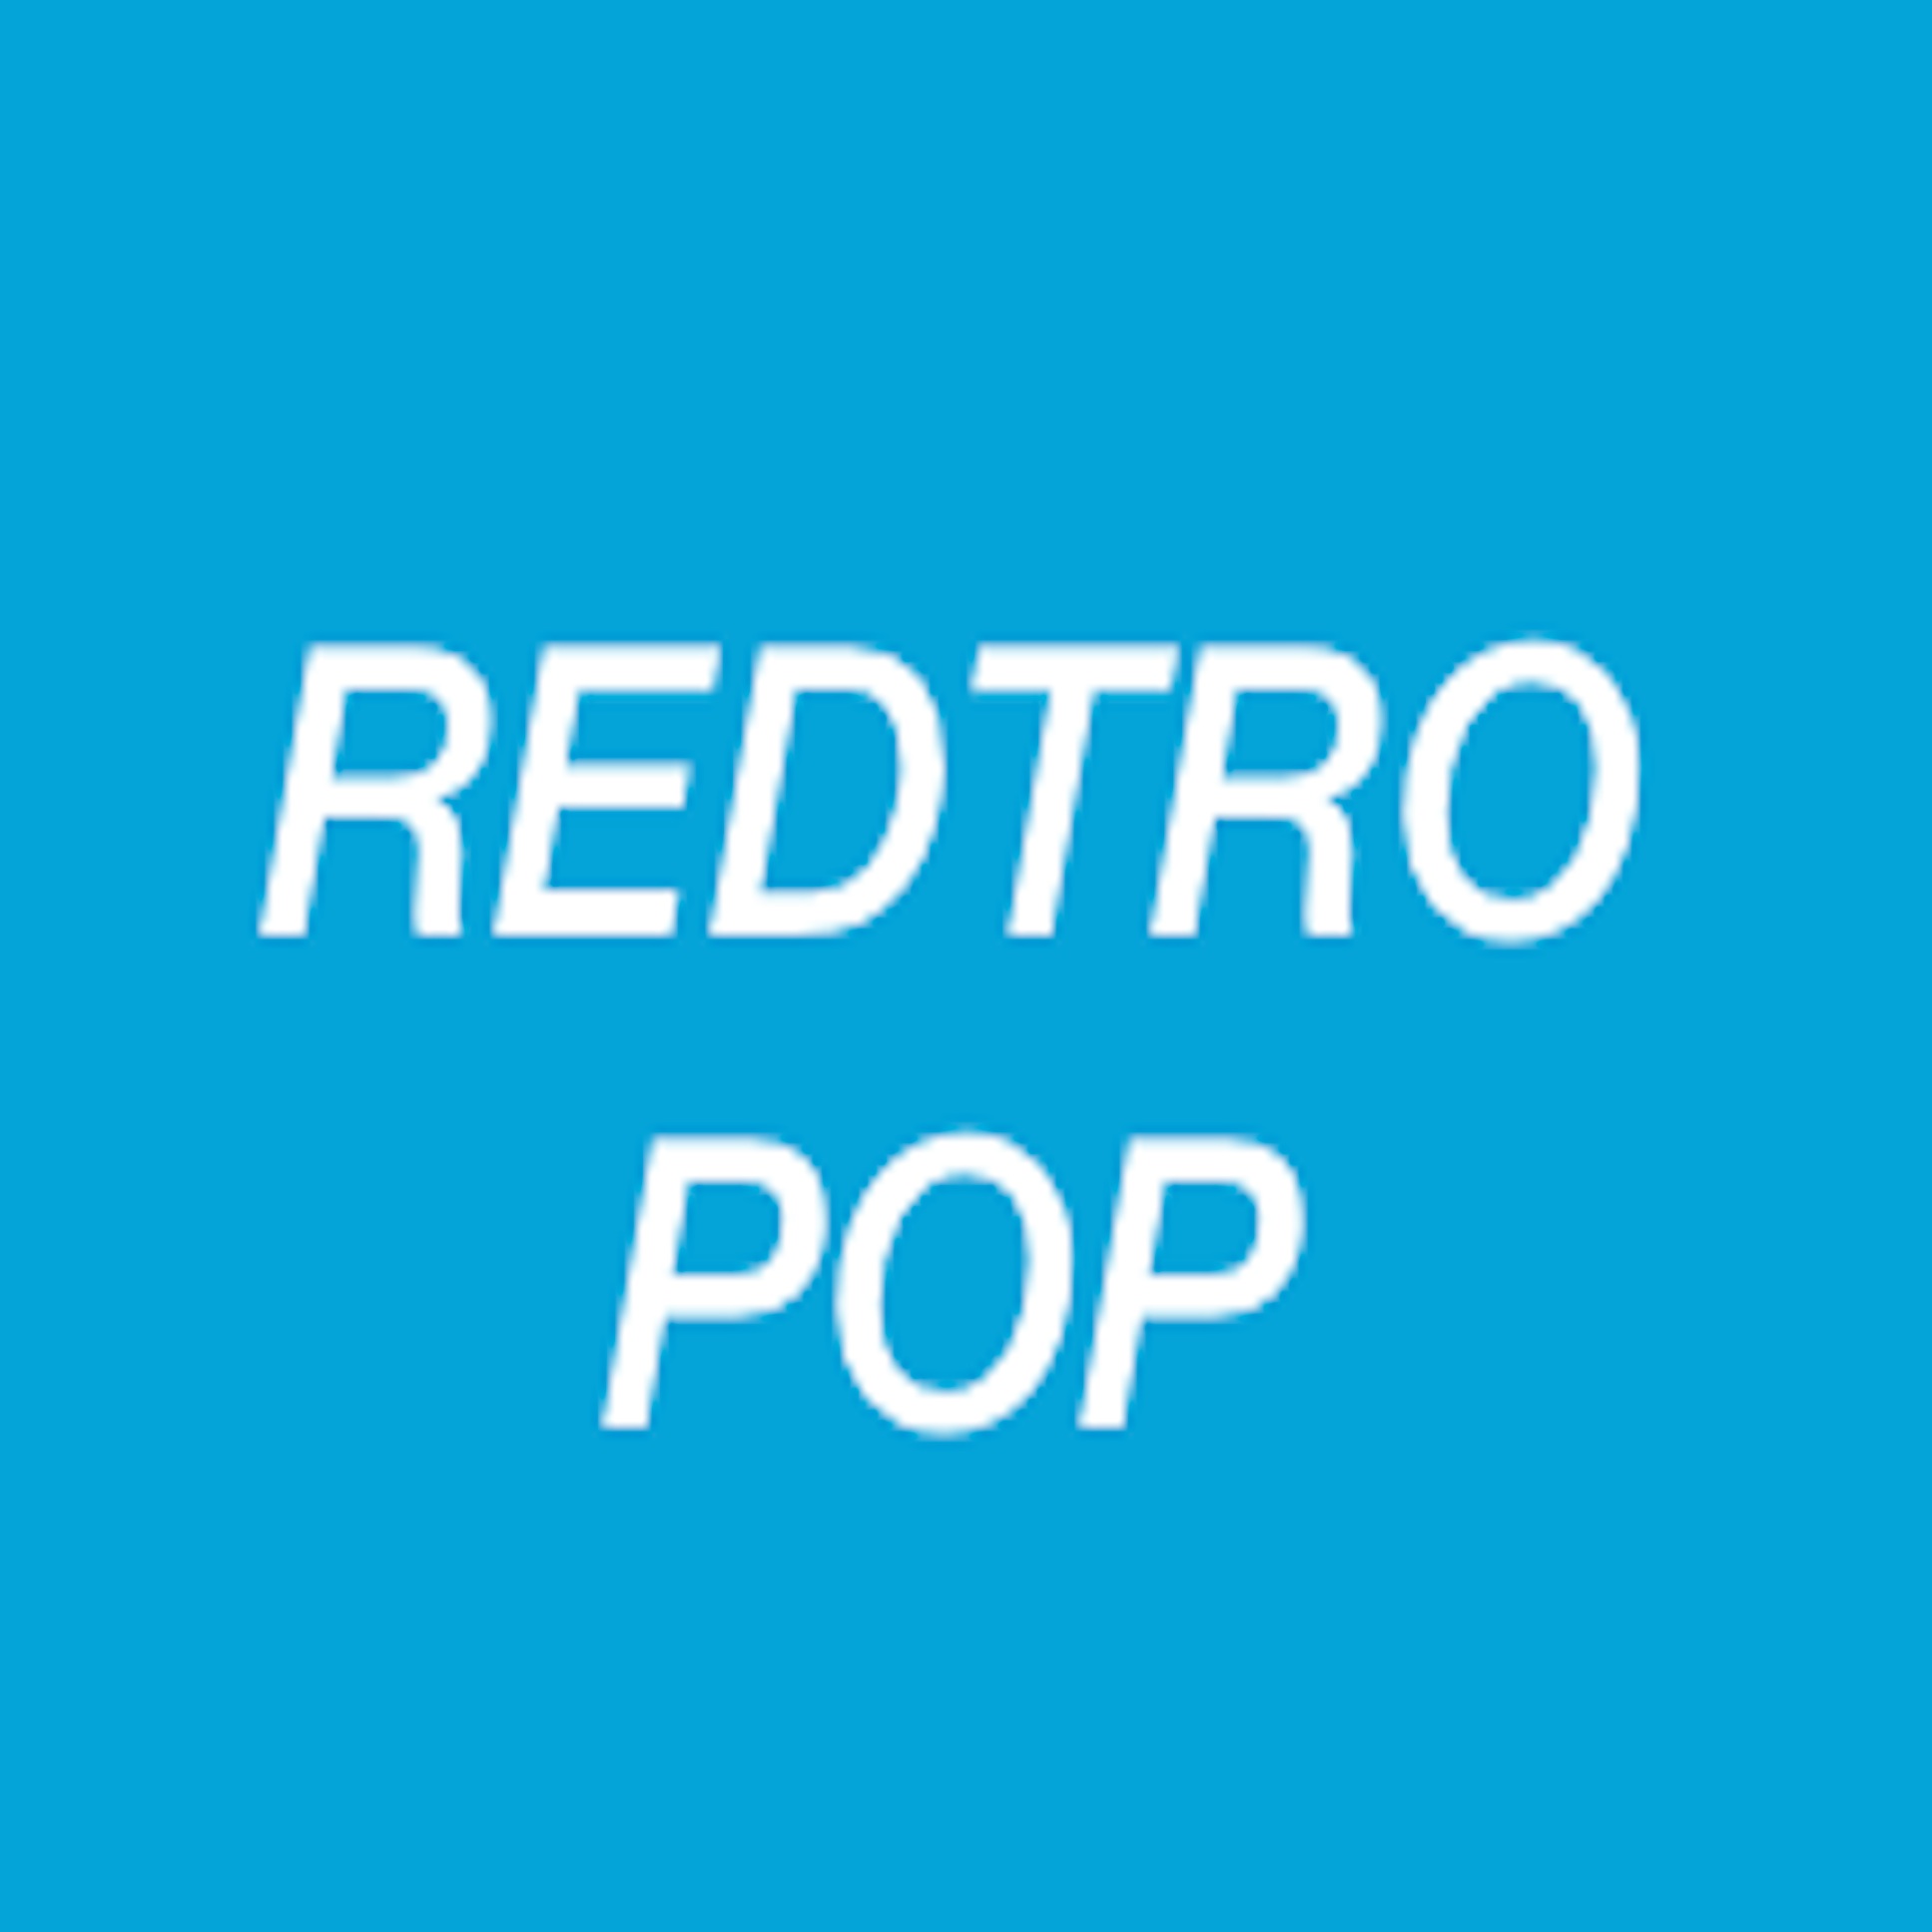 REDTRO POP